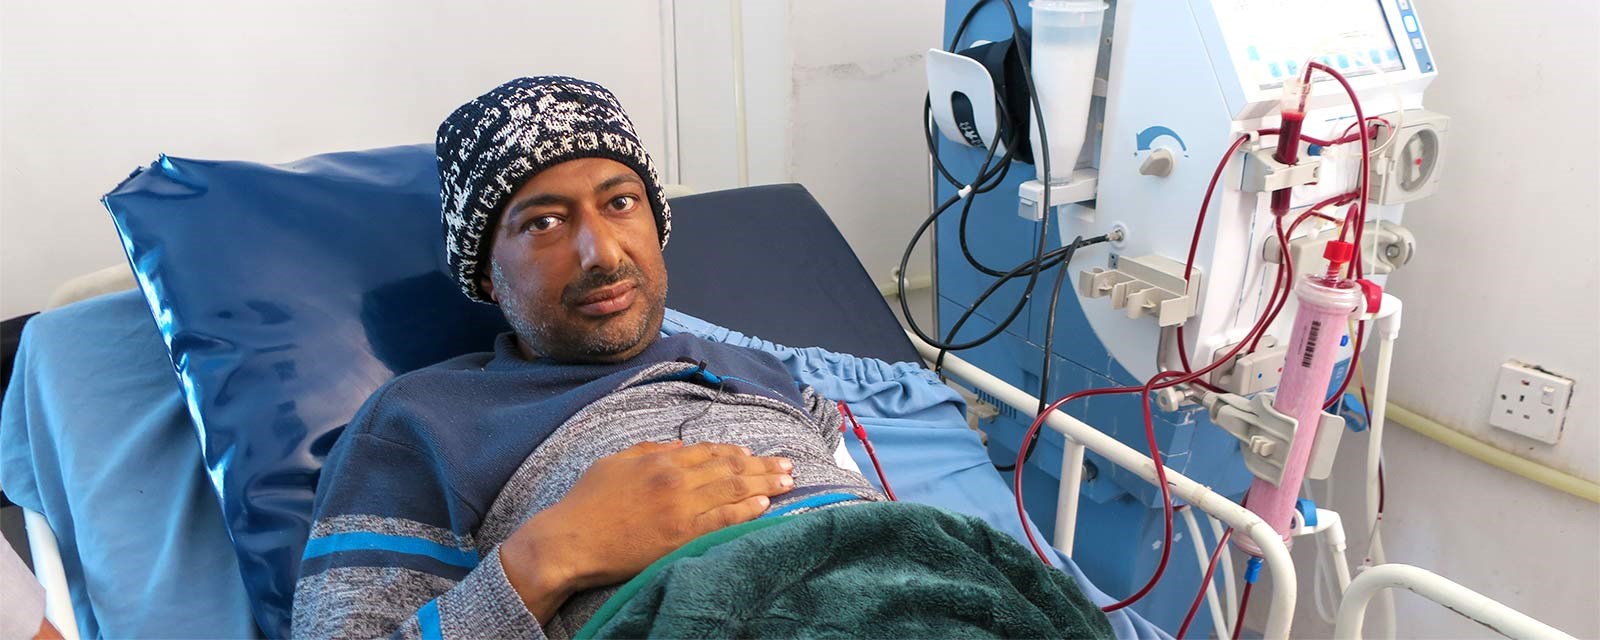 I Jemen er helsetilbudet hardt rammet av krigen. For mange pasienter er det vanskelig å få behandling for kroniske sykdommer. Redwan må til sykehuset for å rense blodet ved dialyse to ganger i uken. Noen ganger er det vanskelig for han å komme seg dit når kampene pågår. Foto: Olav A.  Saltbones/Røde Kors